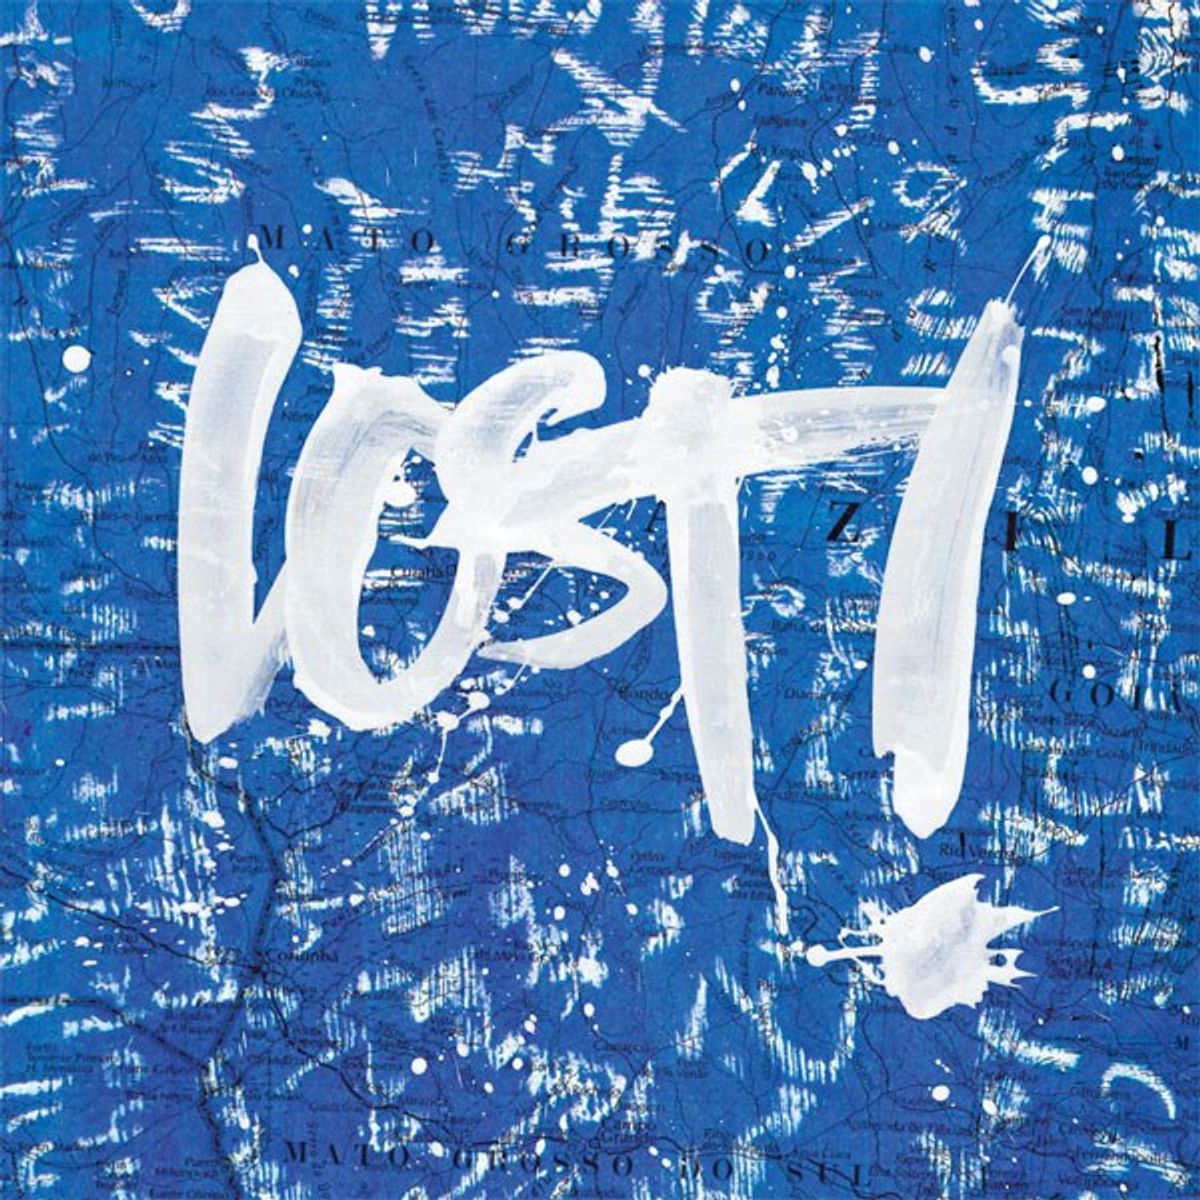 Lost 17